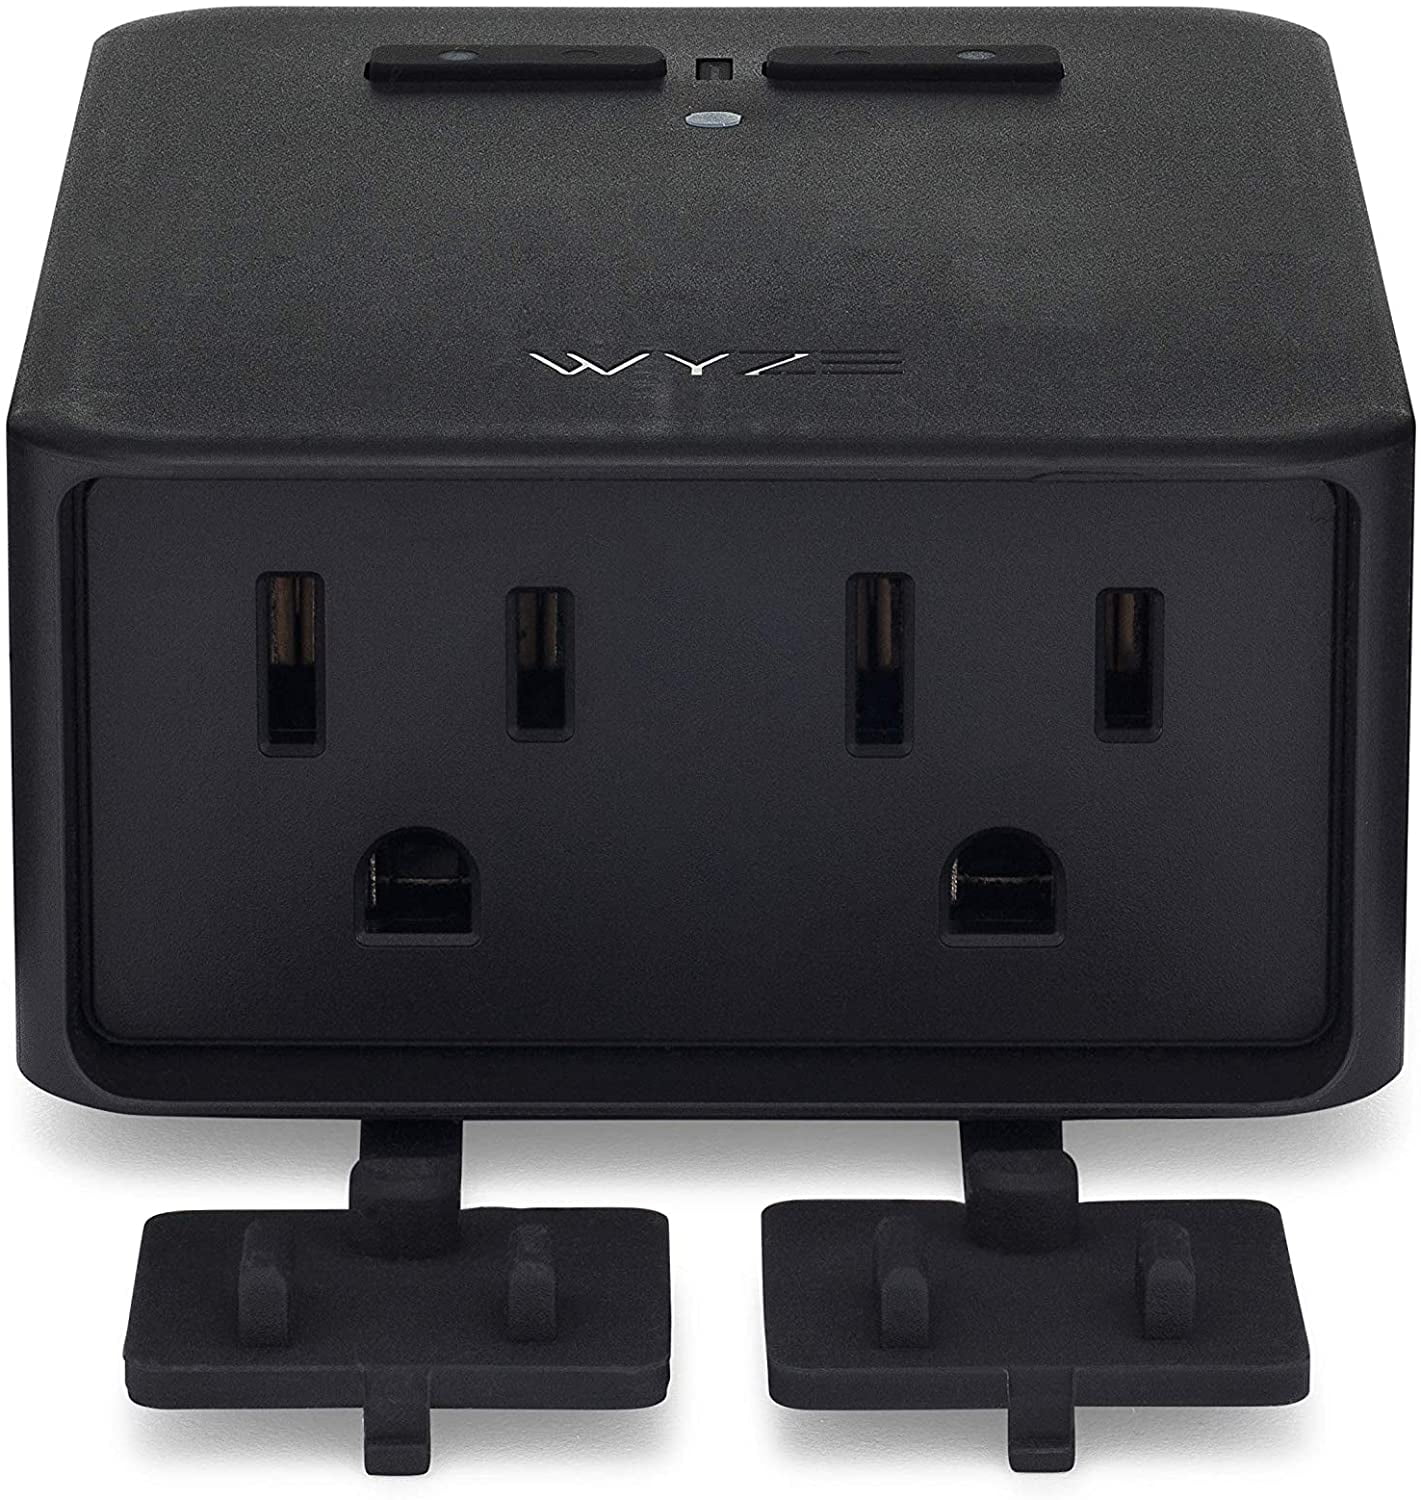 Wyze Plug  Best Smart Plug, Wi-Fi Outlet & Wall Plug – Wyze Labs, Inc.